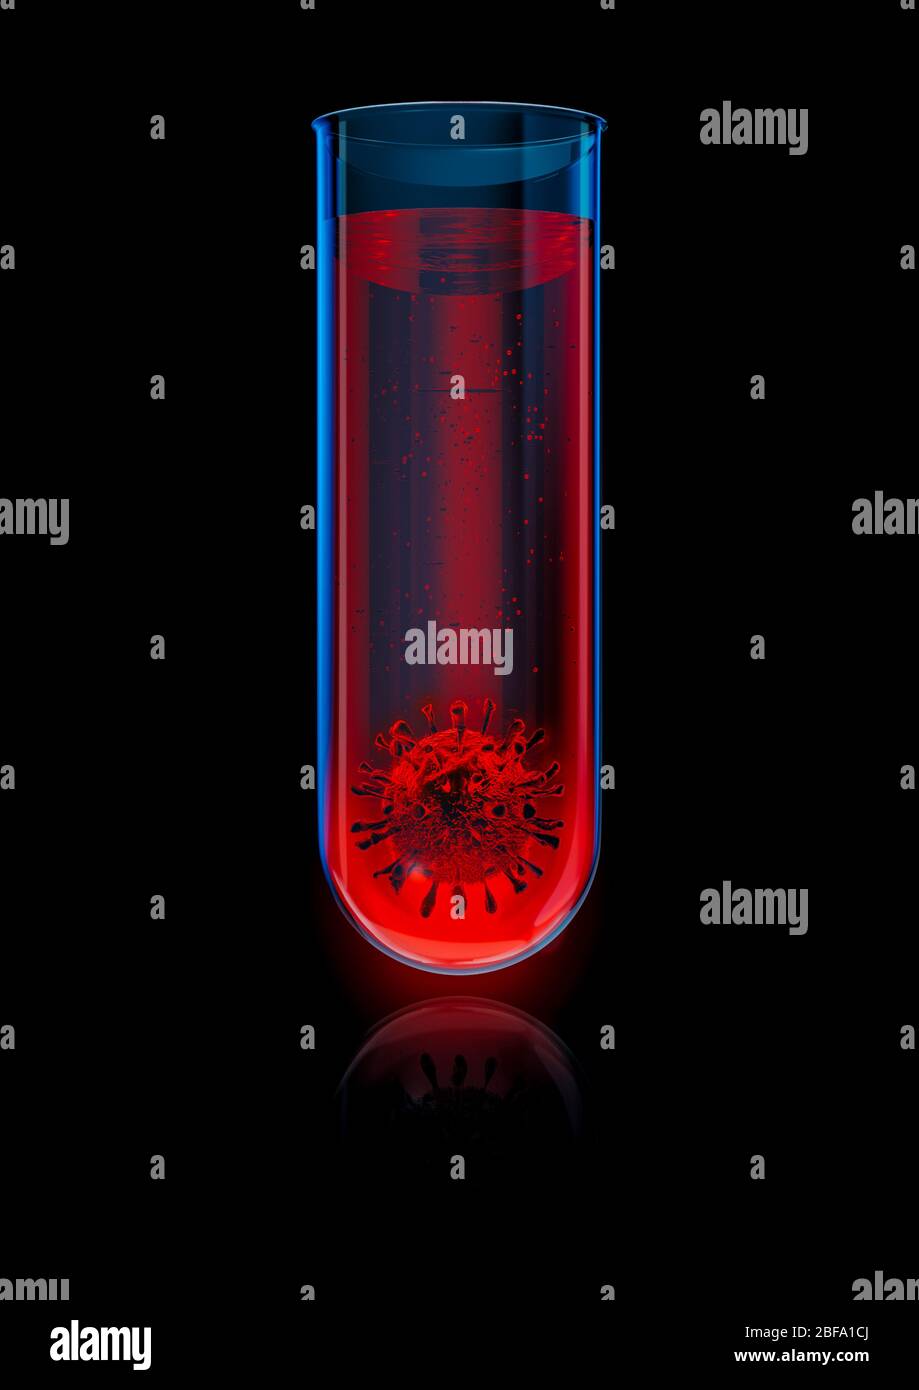 Concepto de pruebas de laboratorio Covid-19 / ilustración 3D de la célula de coronavirus dentro del tubo de ensayo químico de vidrio Foto de stock